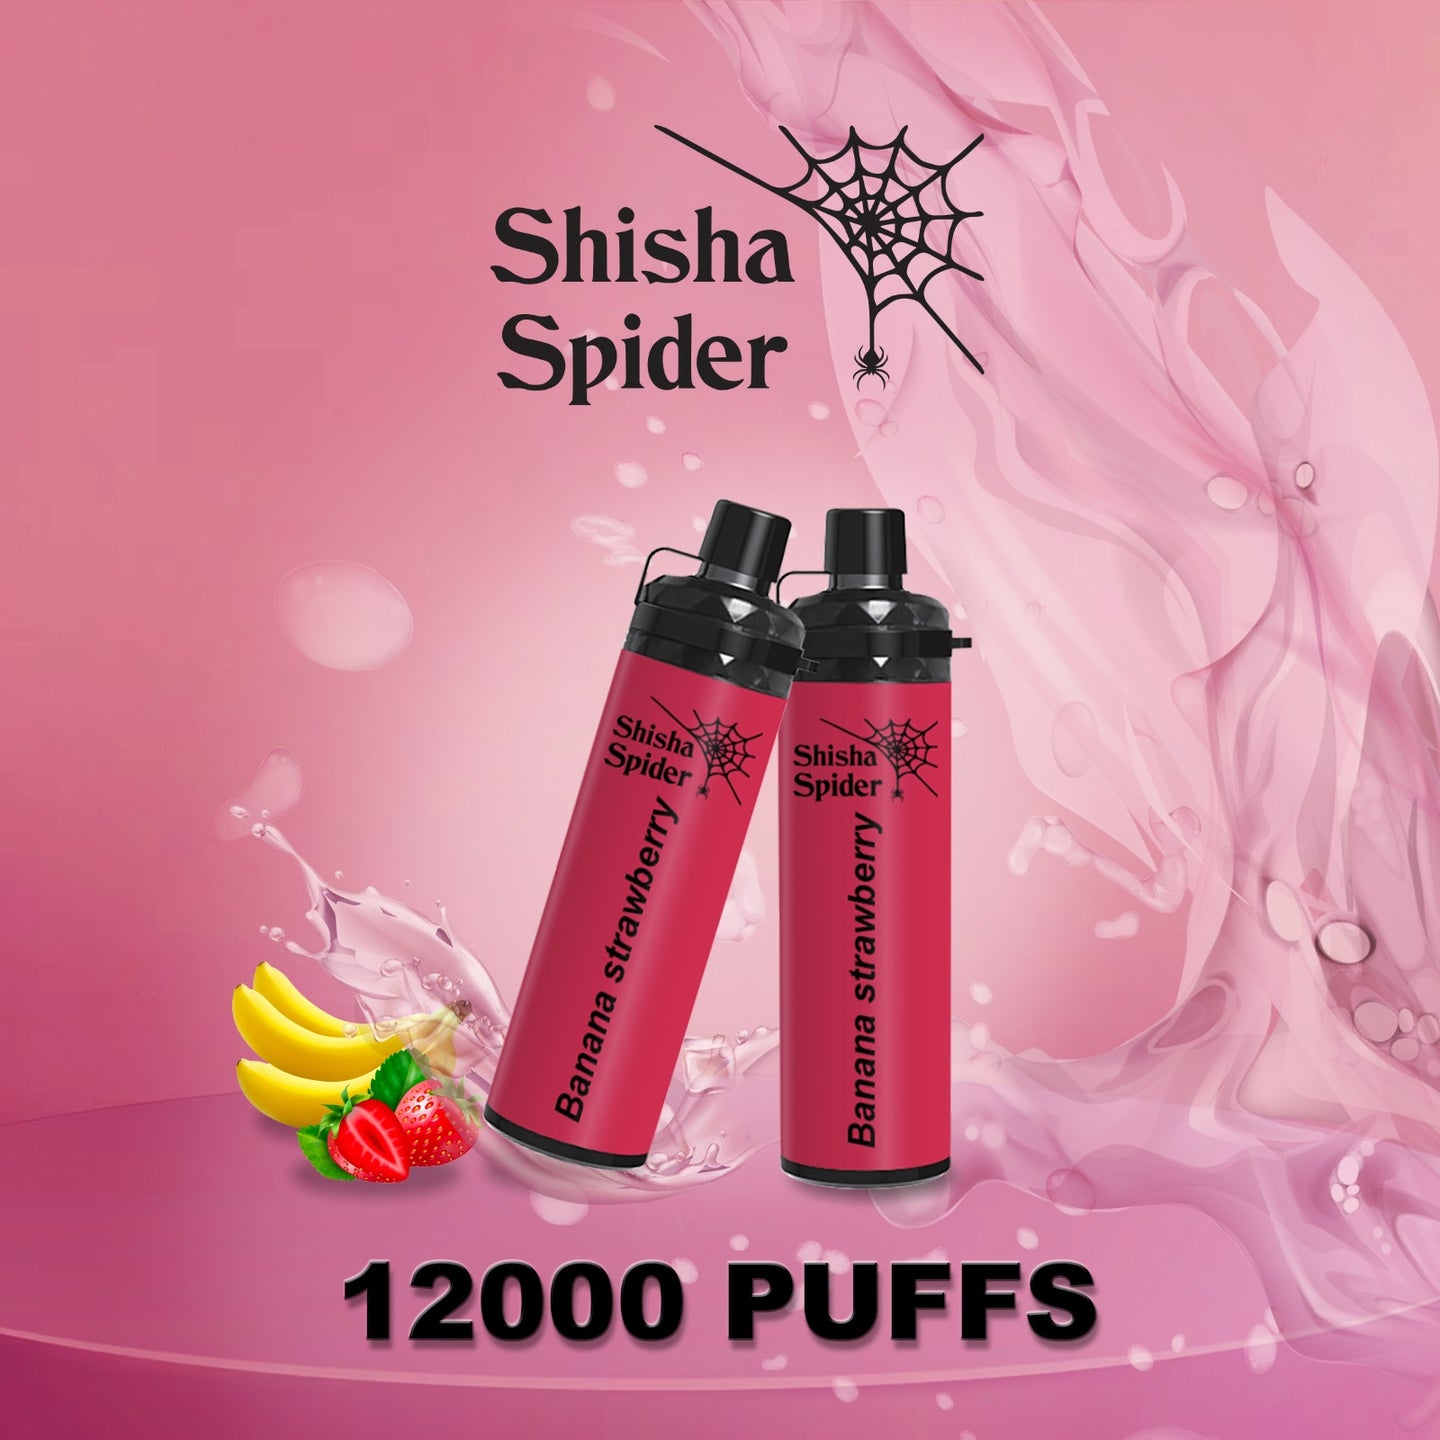 Shisha spider 12000 תות בננה 🍓🍌